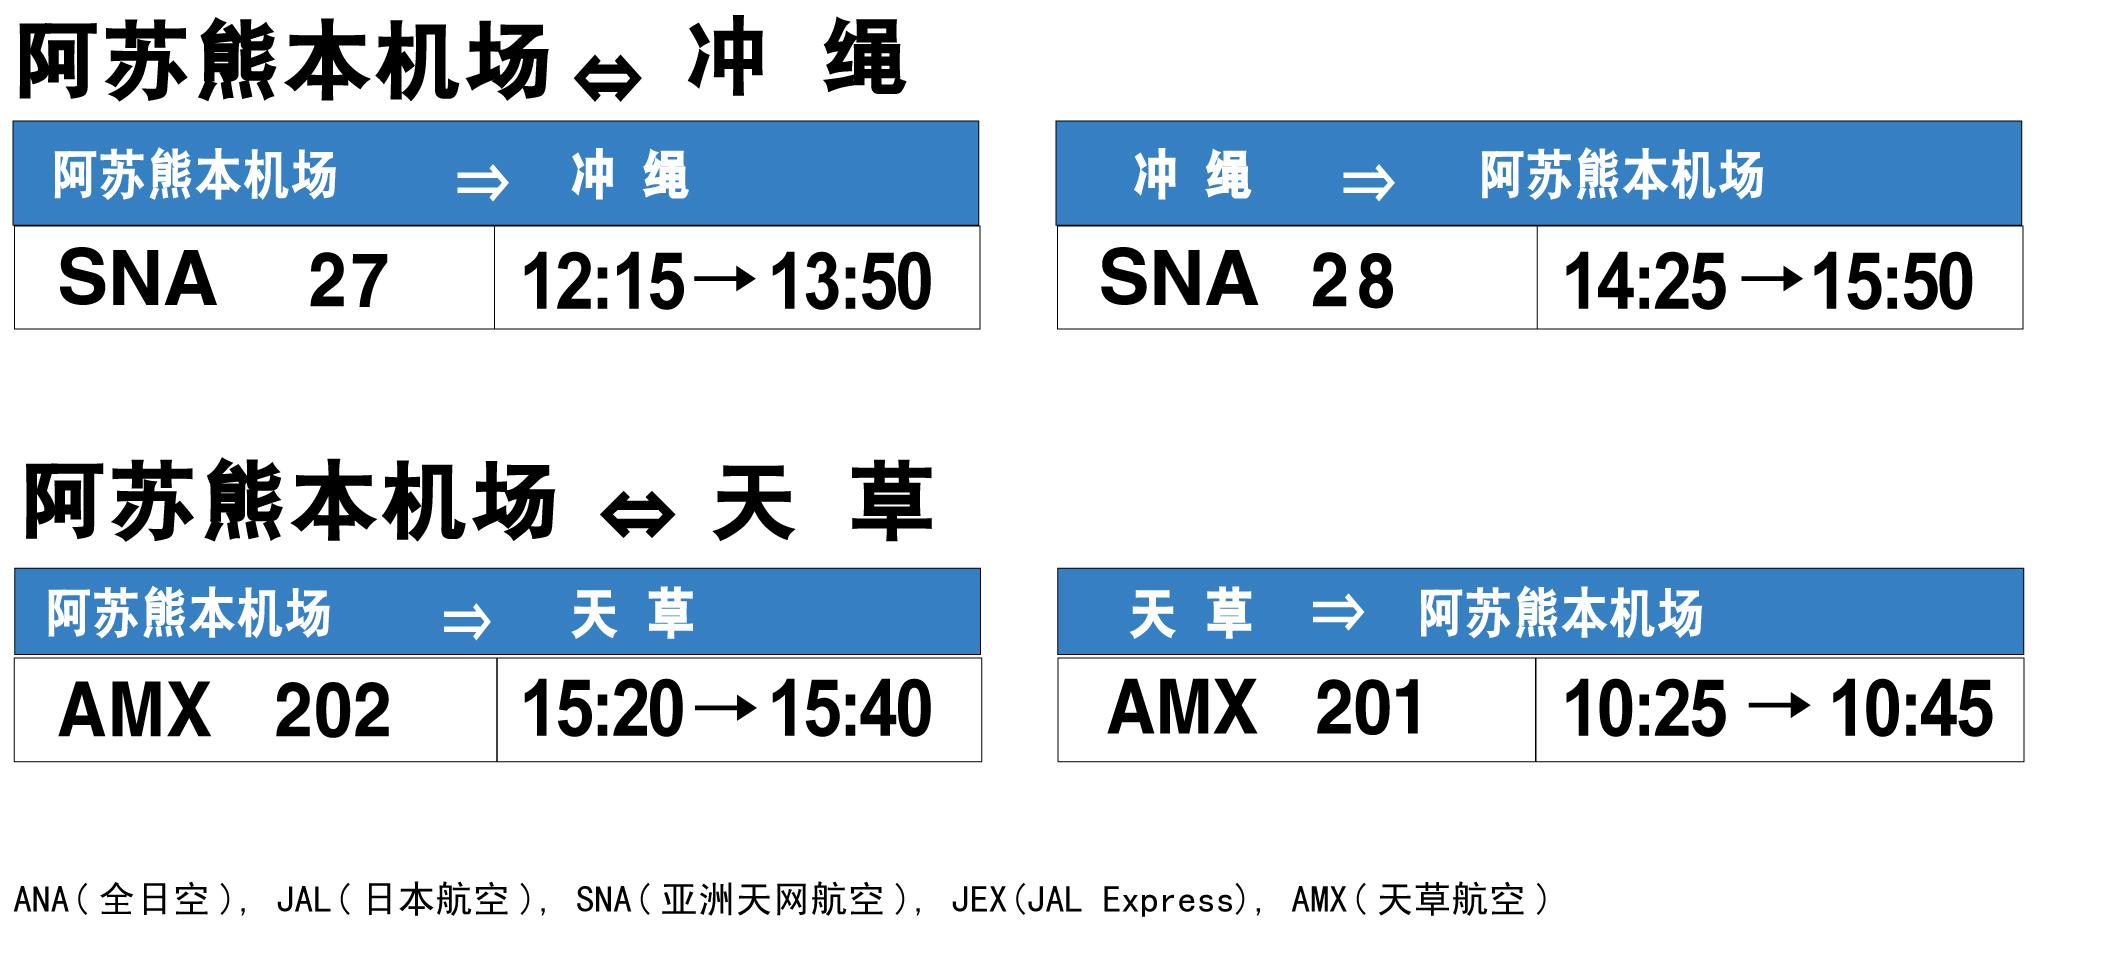 熊本机场的国内航班信息